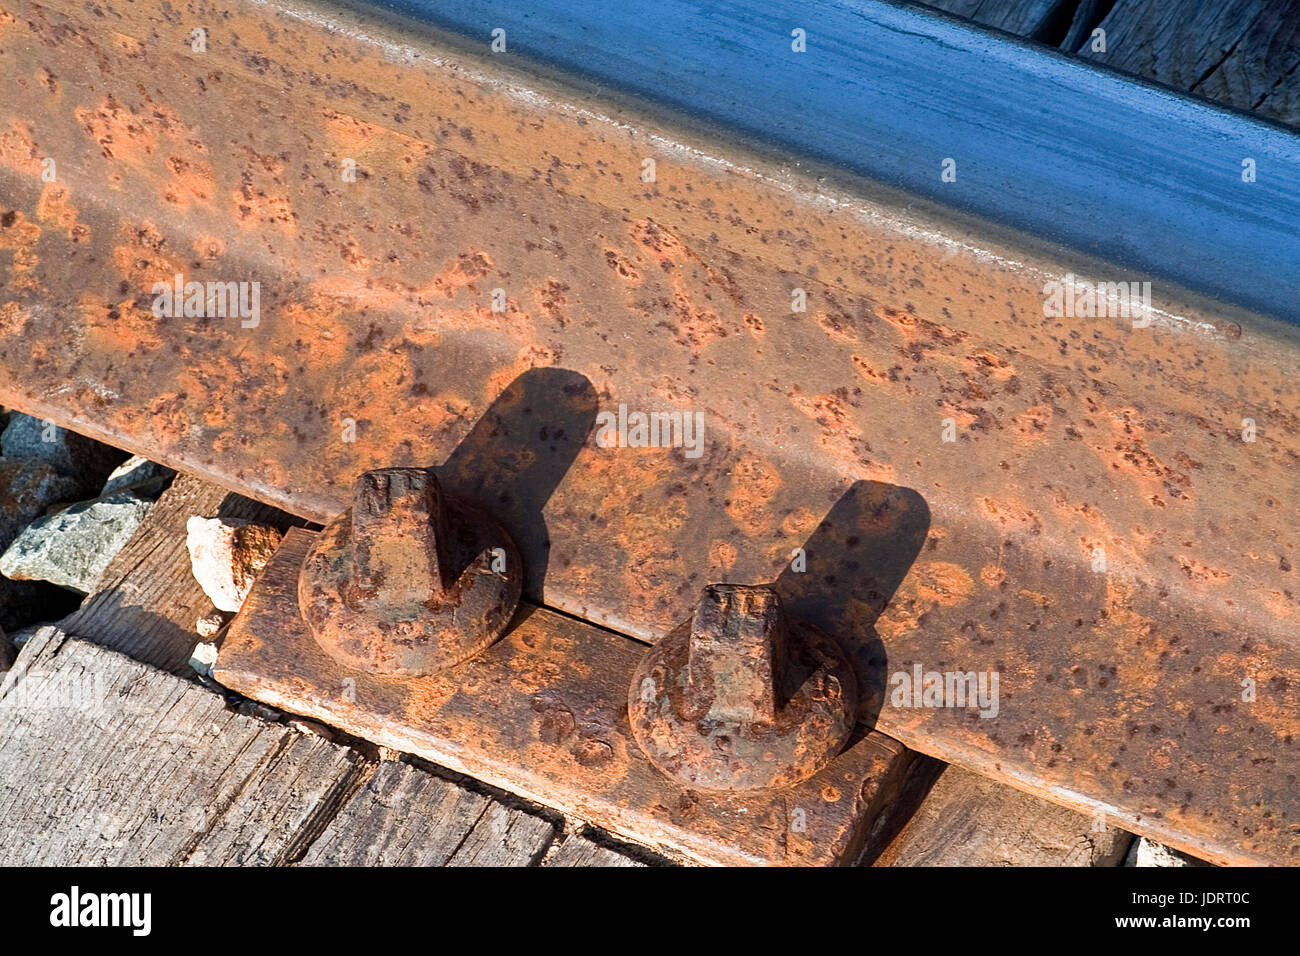 Dettaglio del percorso del treno con viti logore ed ossidato mediante il passaggio del tempo Foto Stock